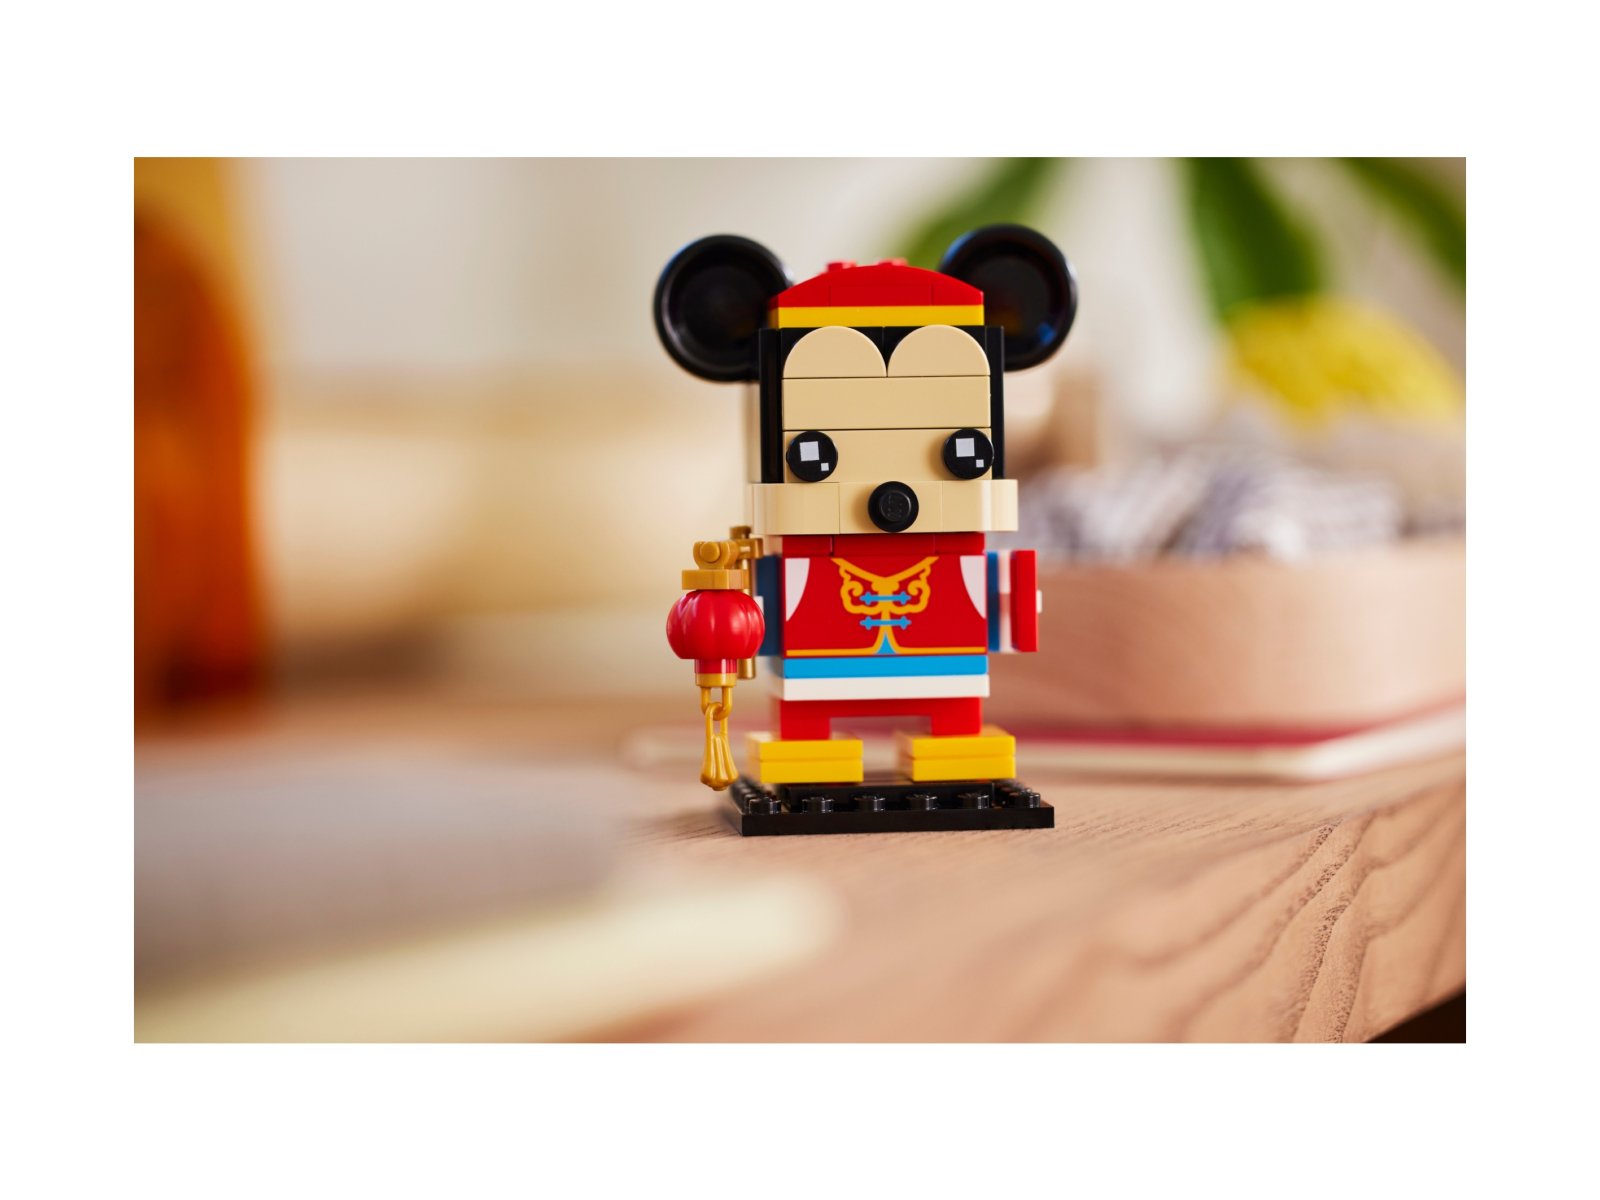 LEGO 40673 BrickHeadz Myszka Miki w stroju na wiosenny festiwal